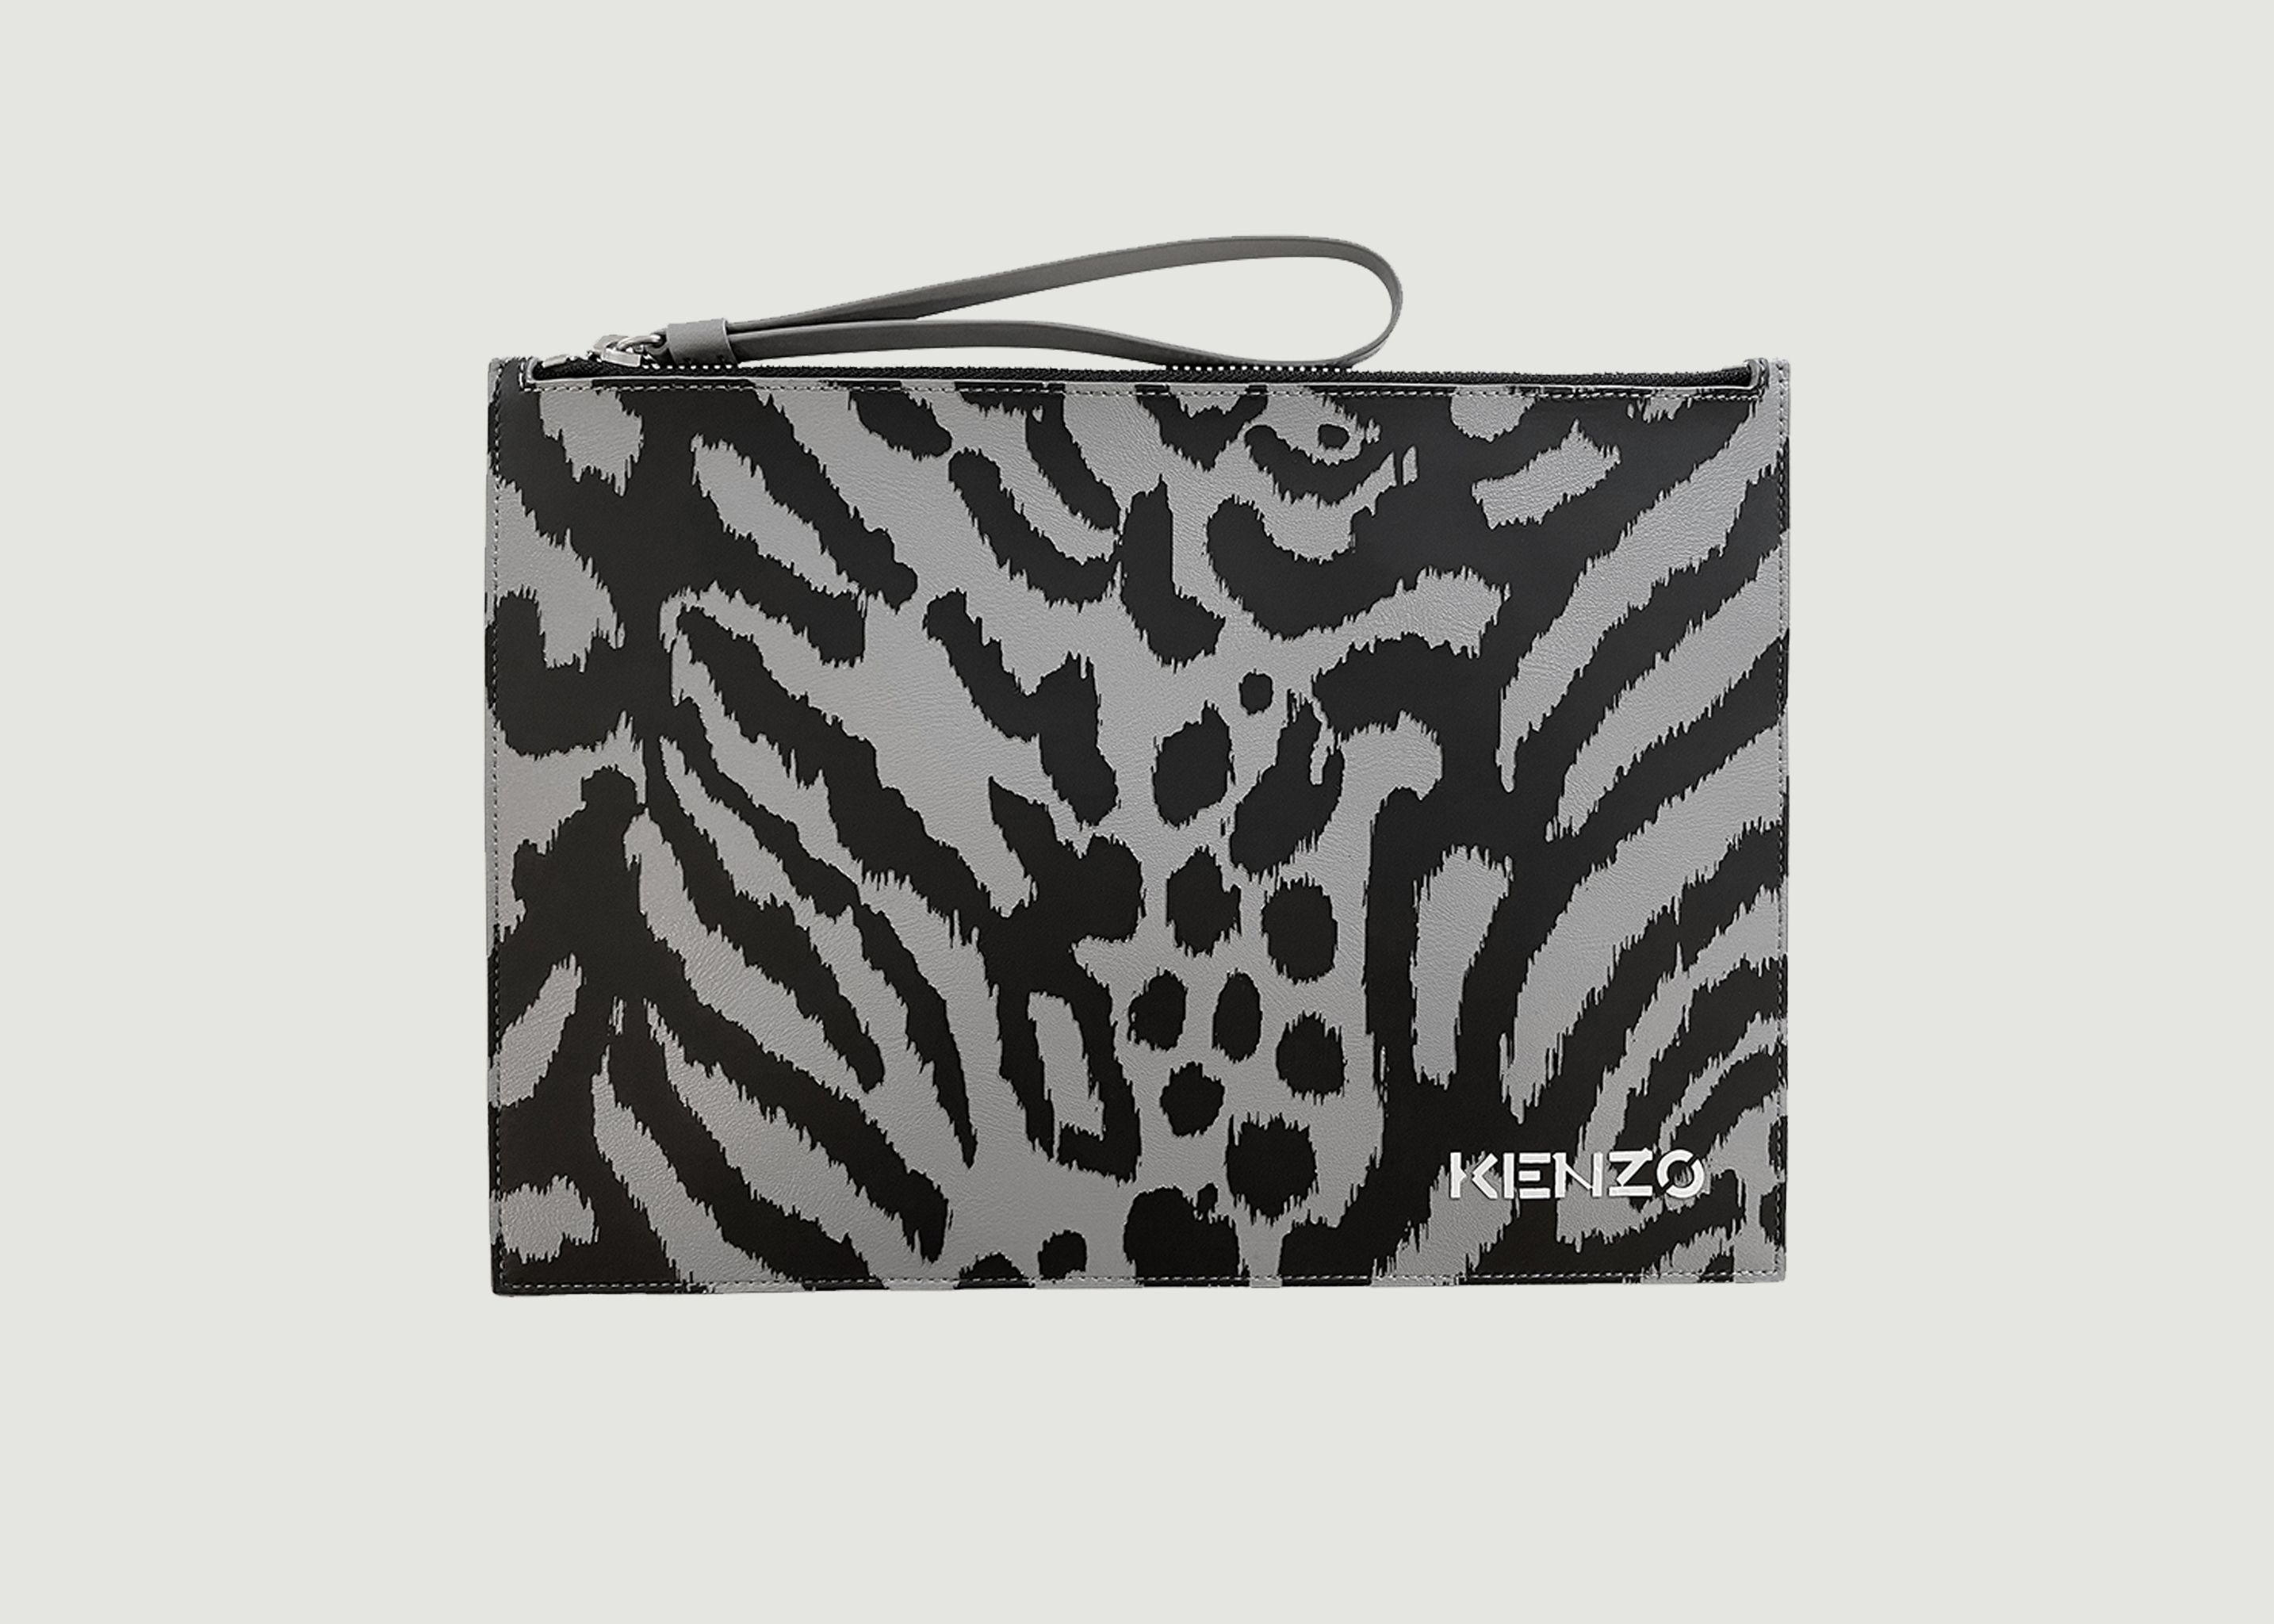 Kenzo x Kansai Yamamoto leopard pattern leather pouch - Kenzo